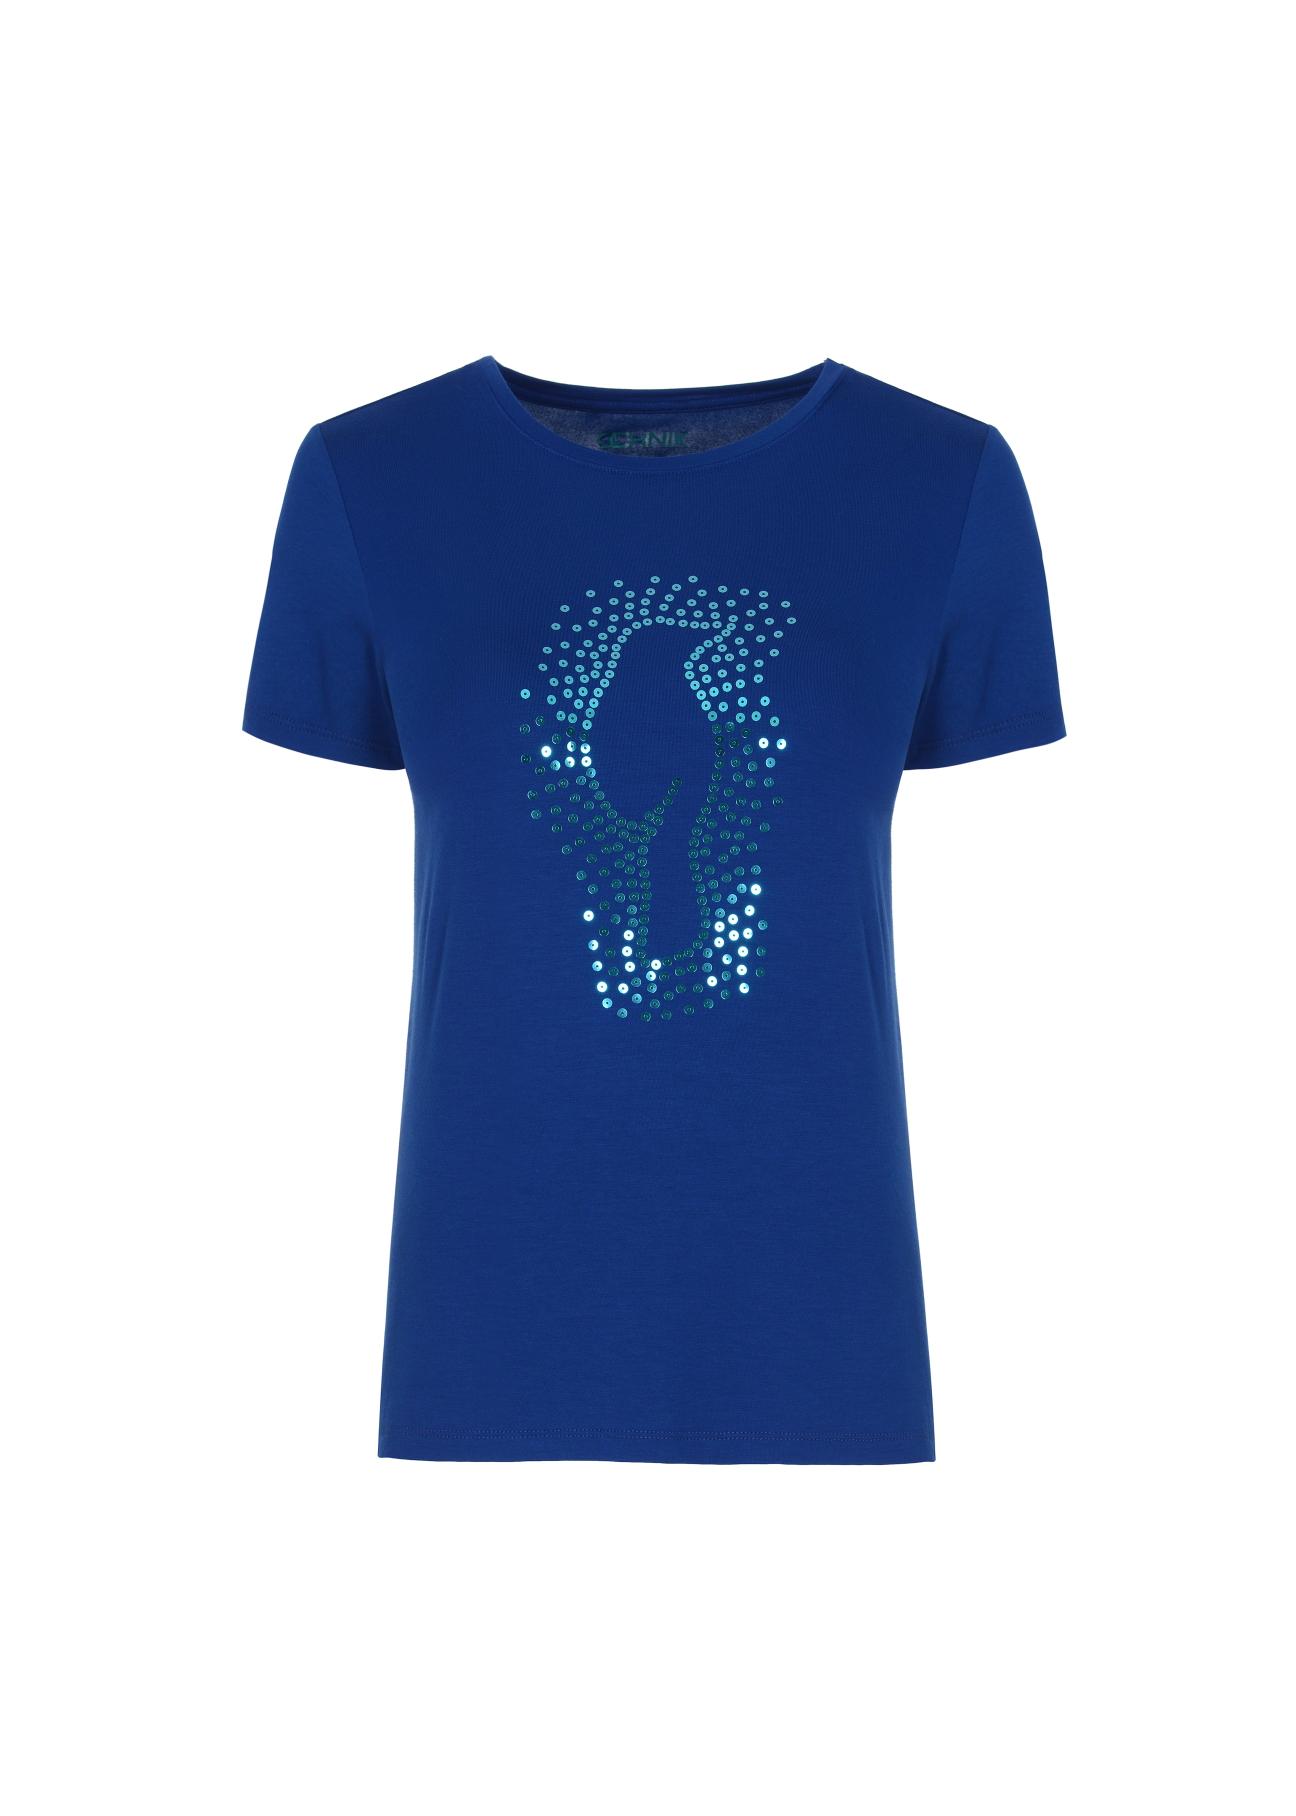 Niebieski T-shirt damski z wilgą TSHDT-0070-61(Z20)